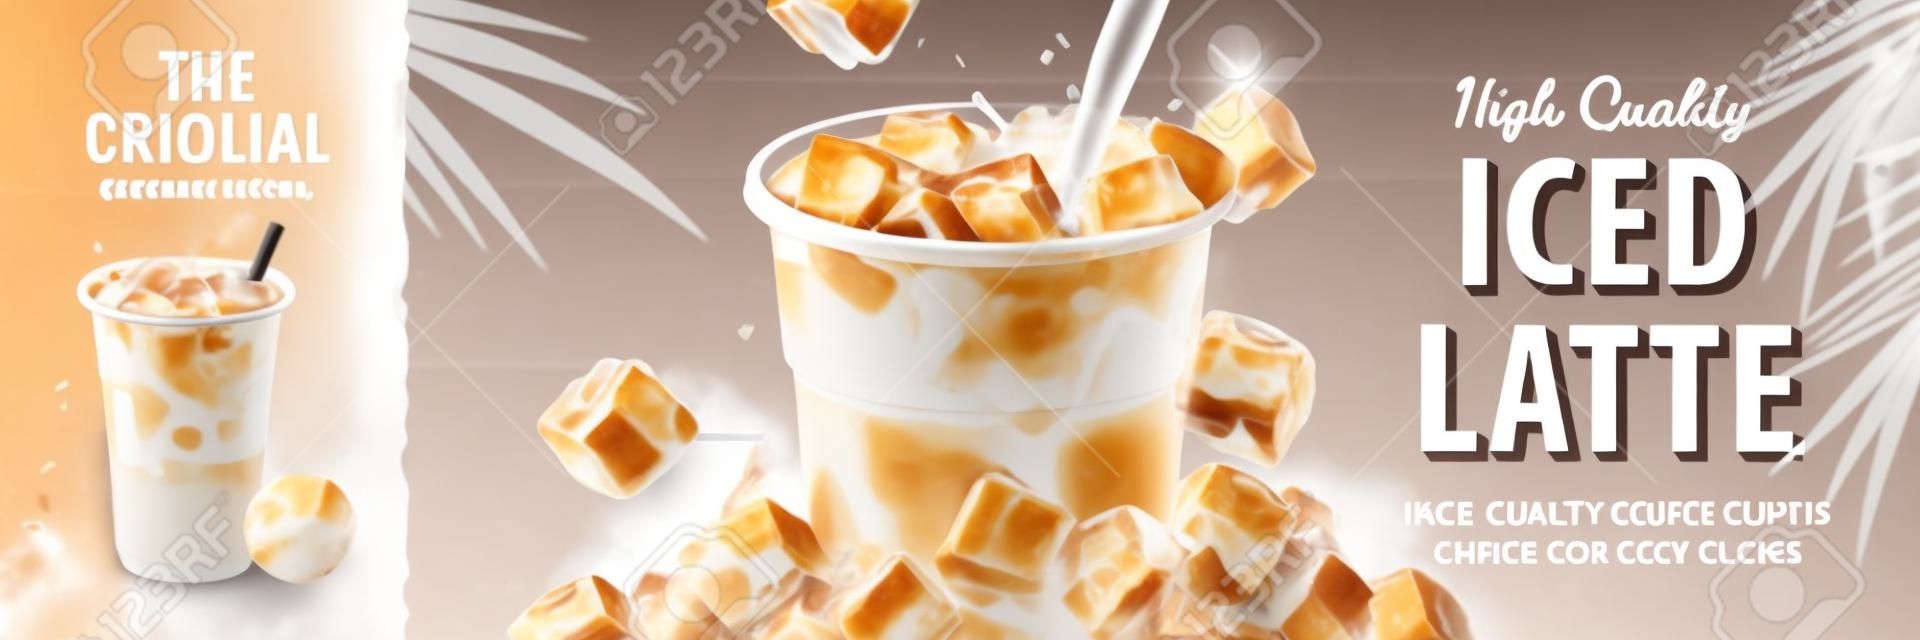 Bannière de latte glacée avec du lait versé dans une tasse à emporter et des glaçons autour, illustration 3d